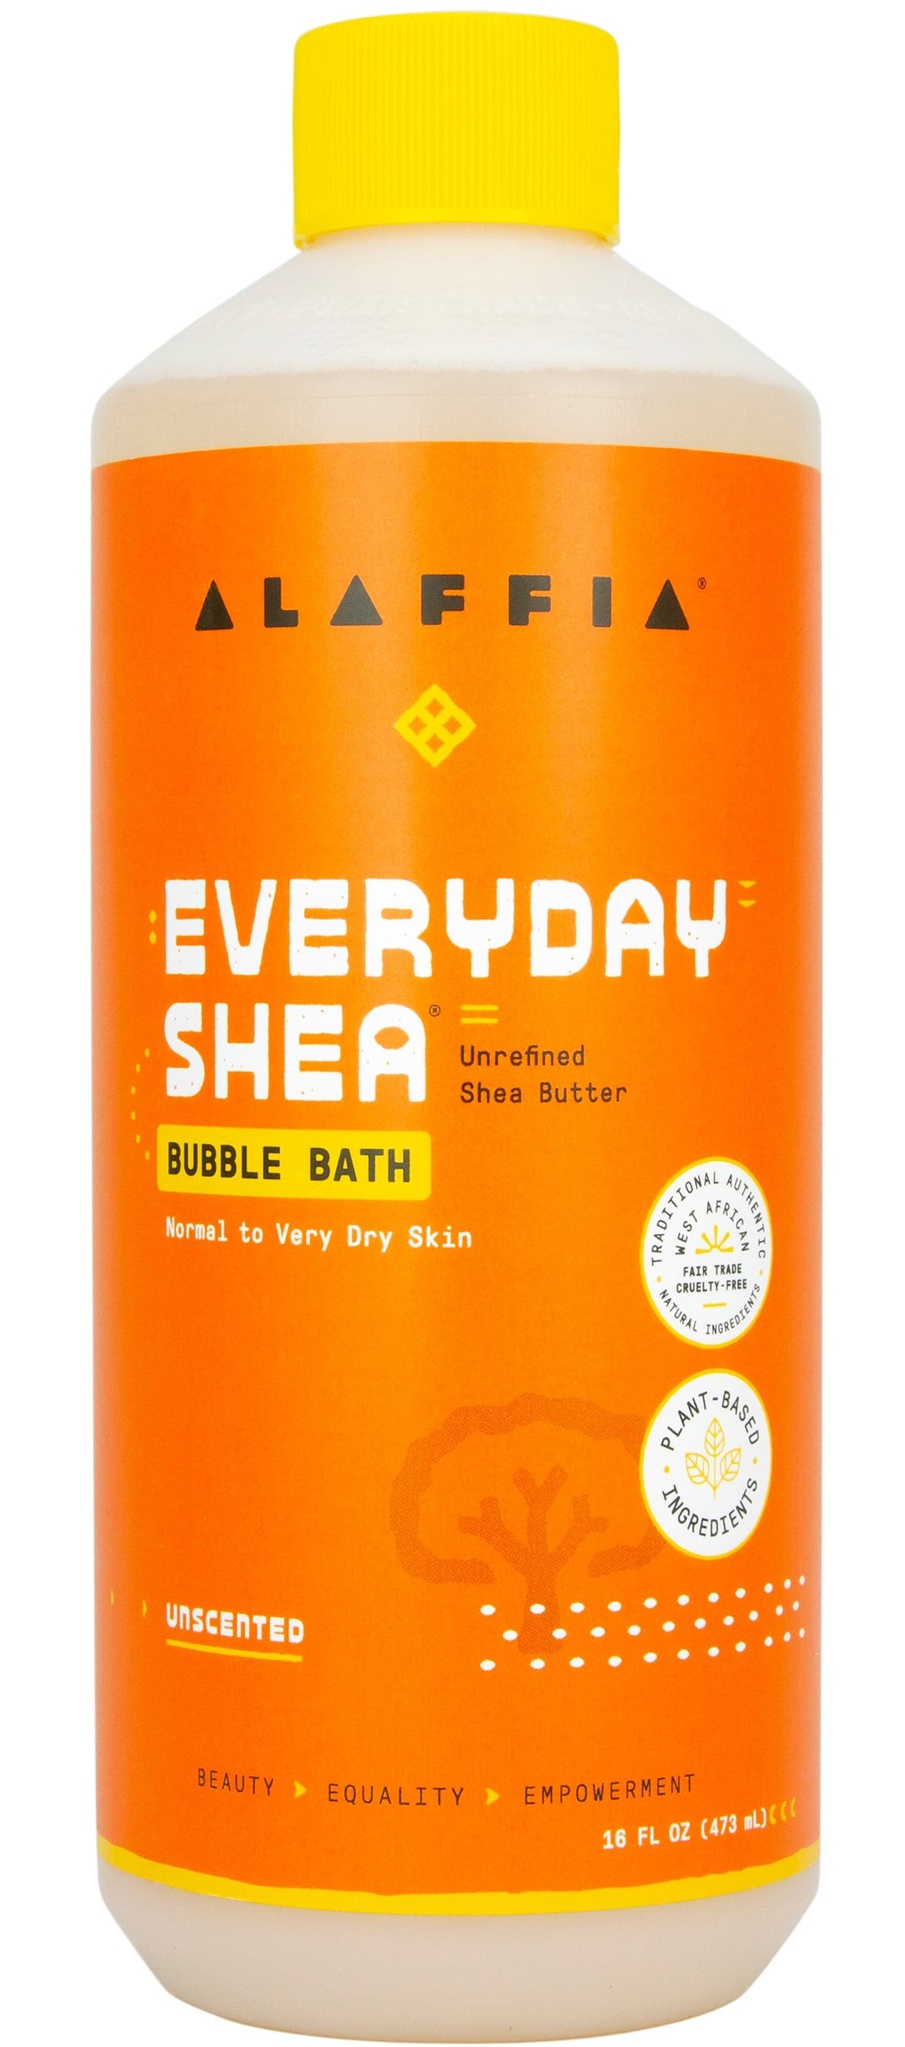 Alaffia Everyday Shea Bubble Bath - Unscented